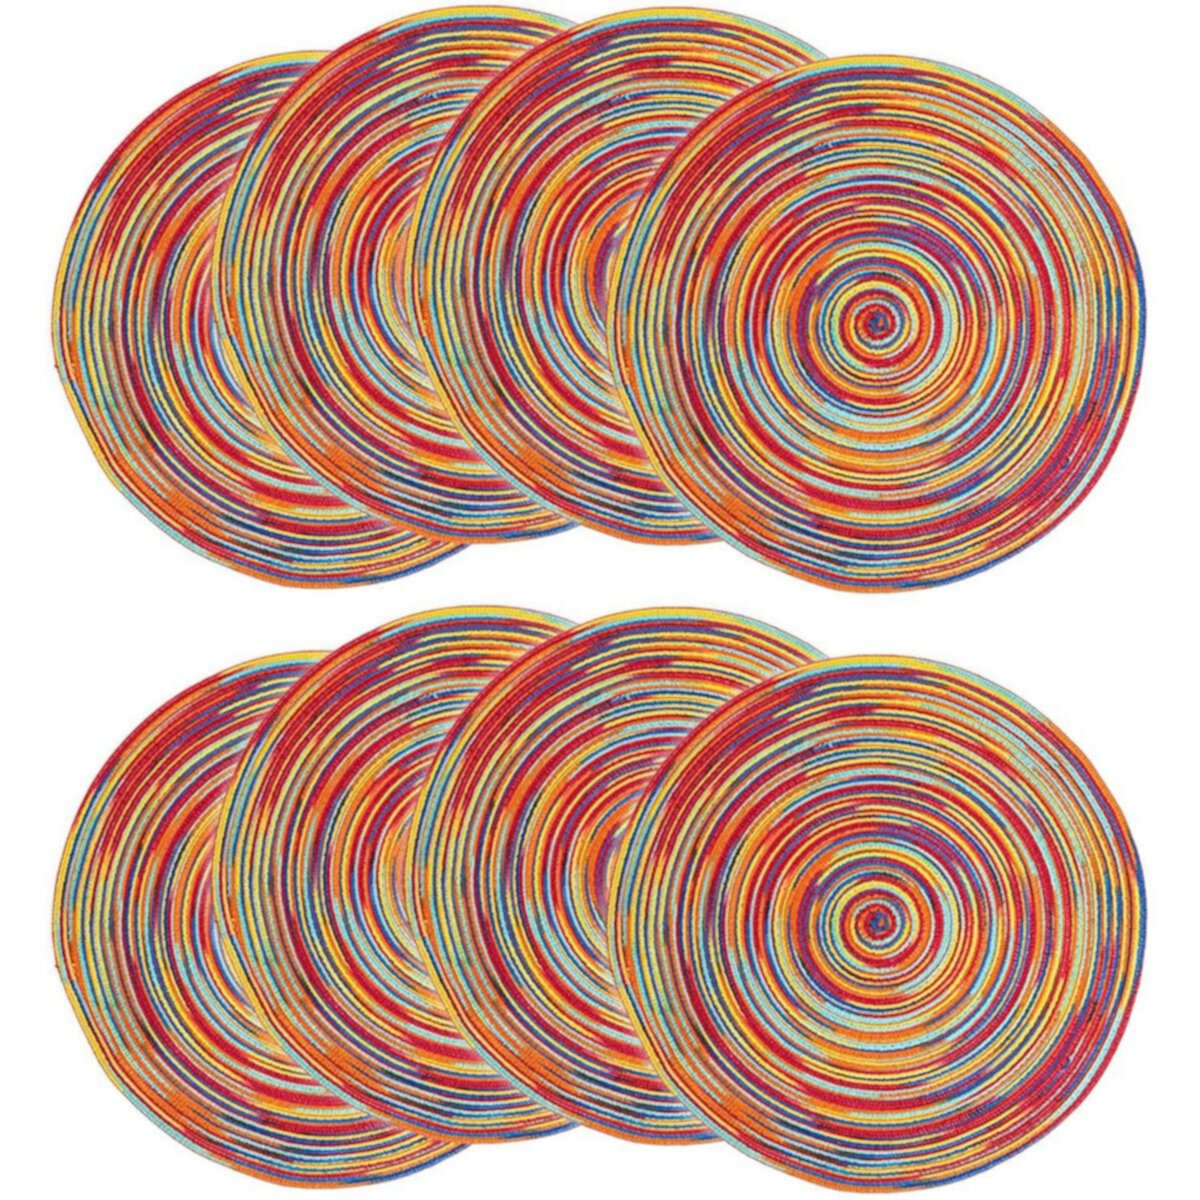 Красочные круглые плетеные салфетки для обеденного стола (15 дюймов, 8 шт.) Okuna Outpost